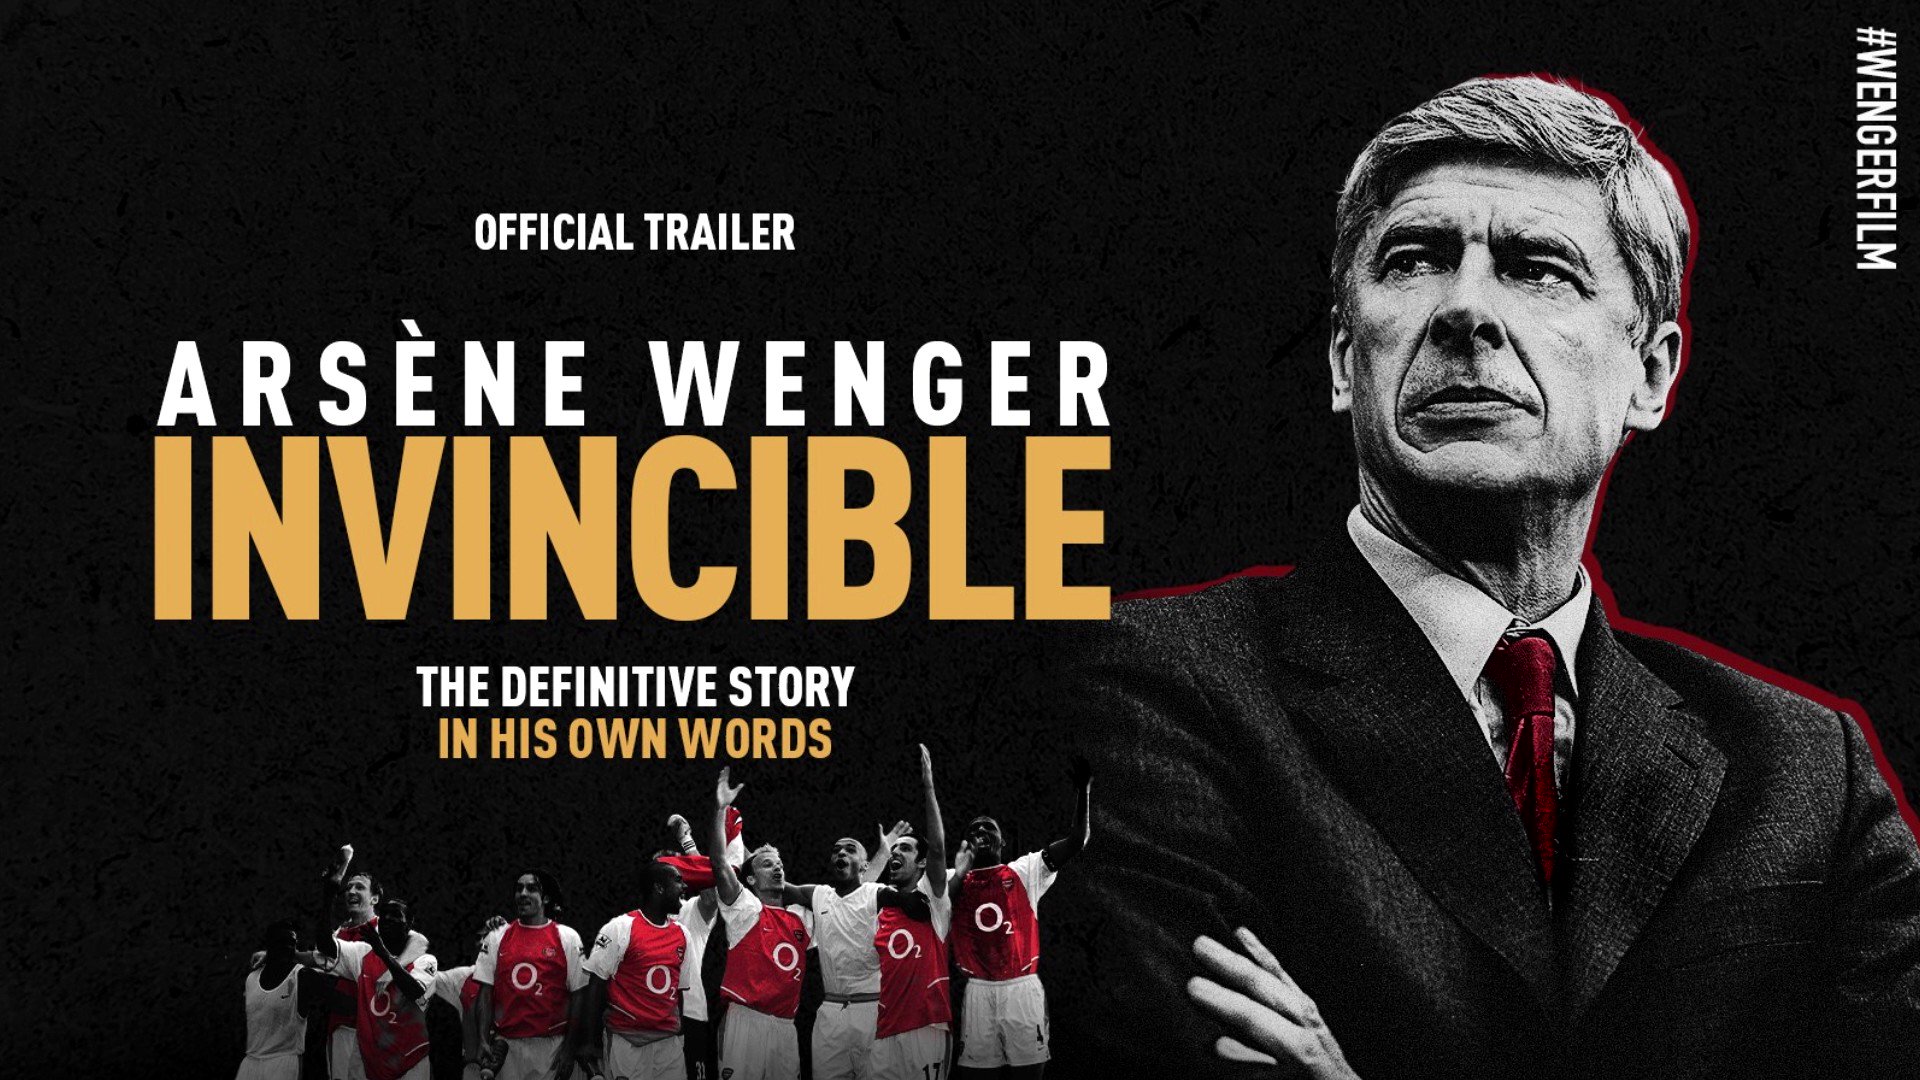 Espn Fc On This New Arsene Wenger Documentary Looks